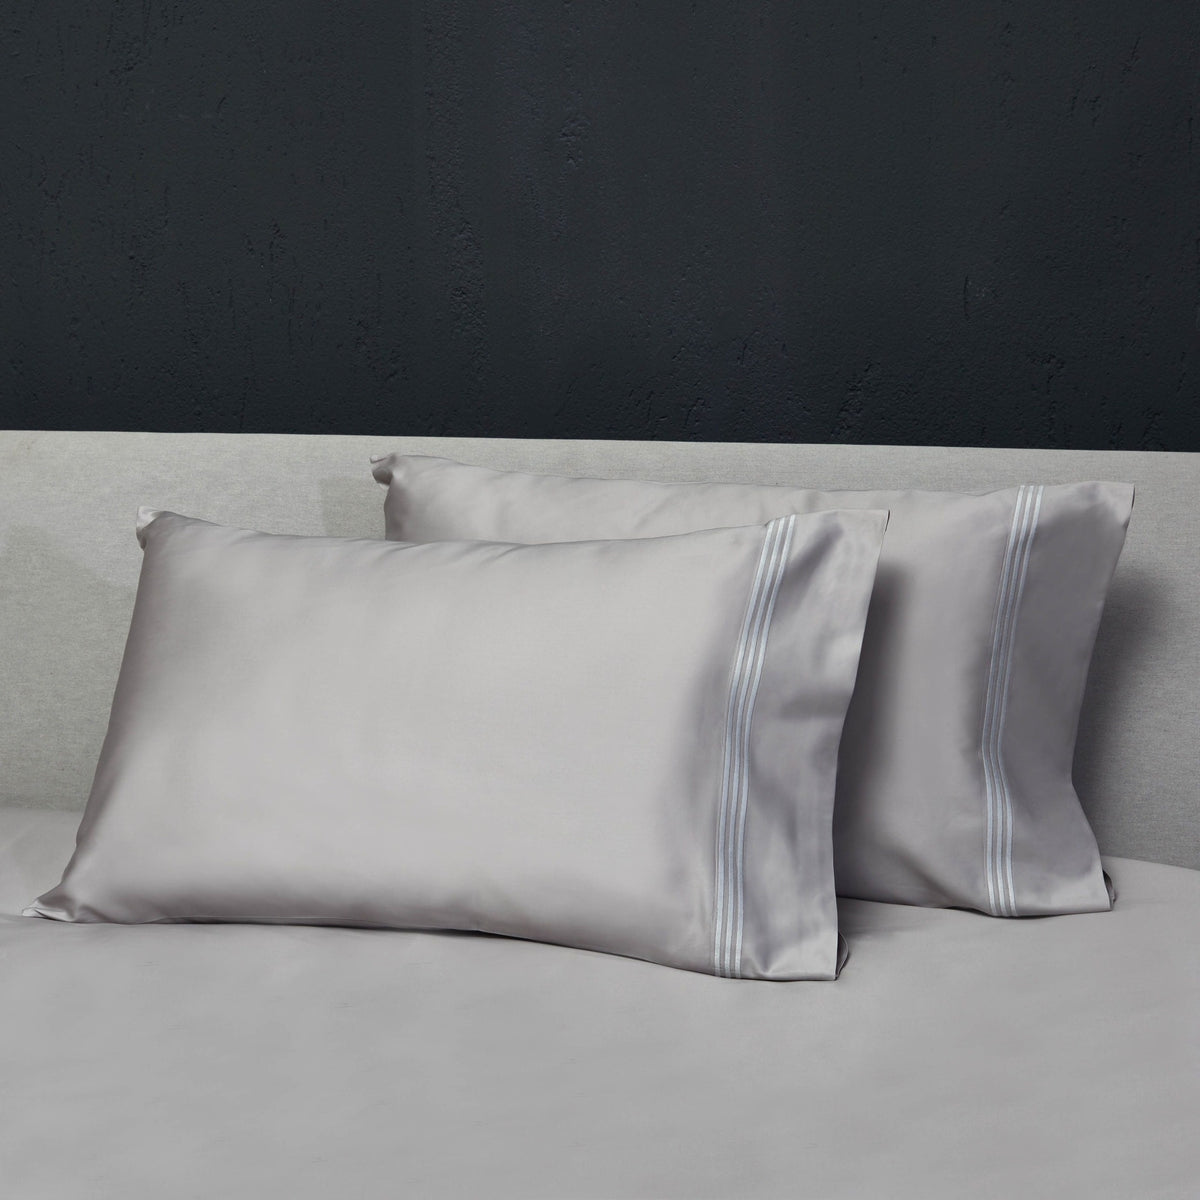 Pair of Pillowcases of Signoria Platinum Sateen Bedding in White/Wilton Blue Color